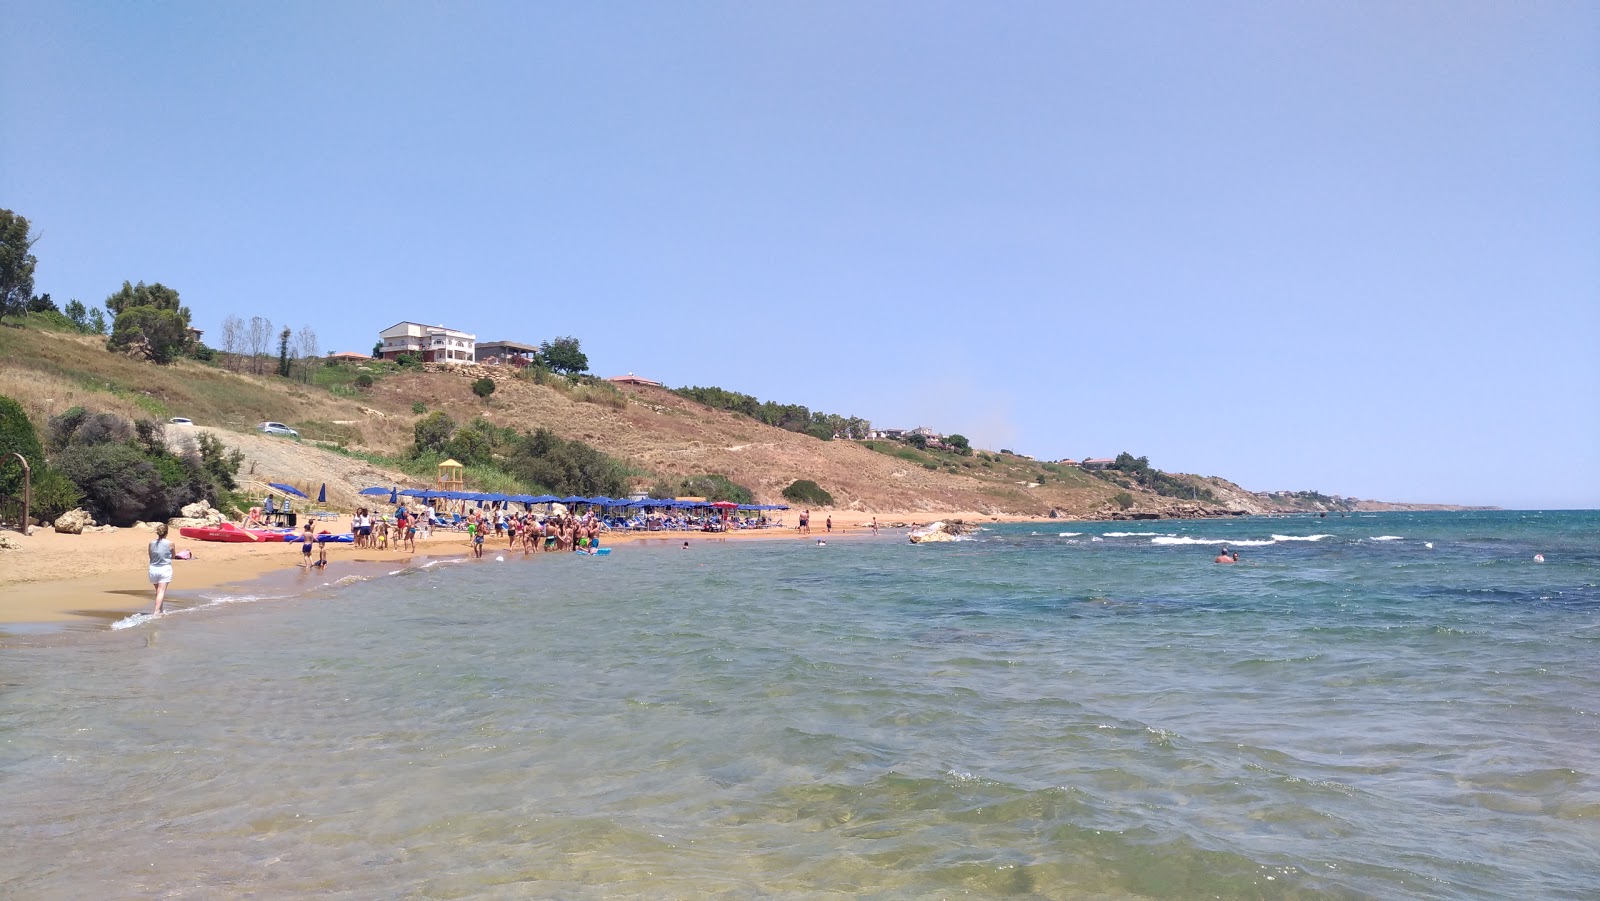 Fotografie cu Fratte III beach - locul popular printre cunoscătorii de relaxare